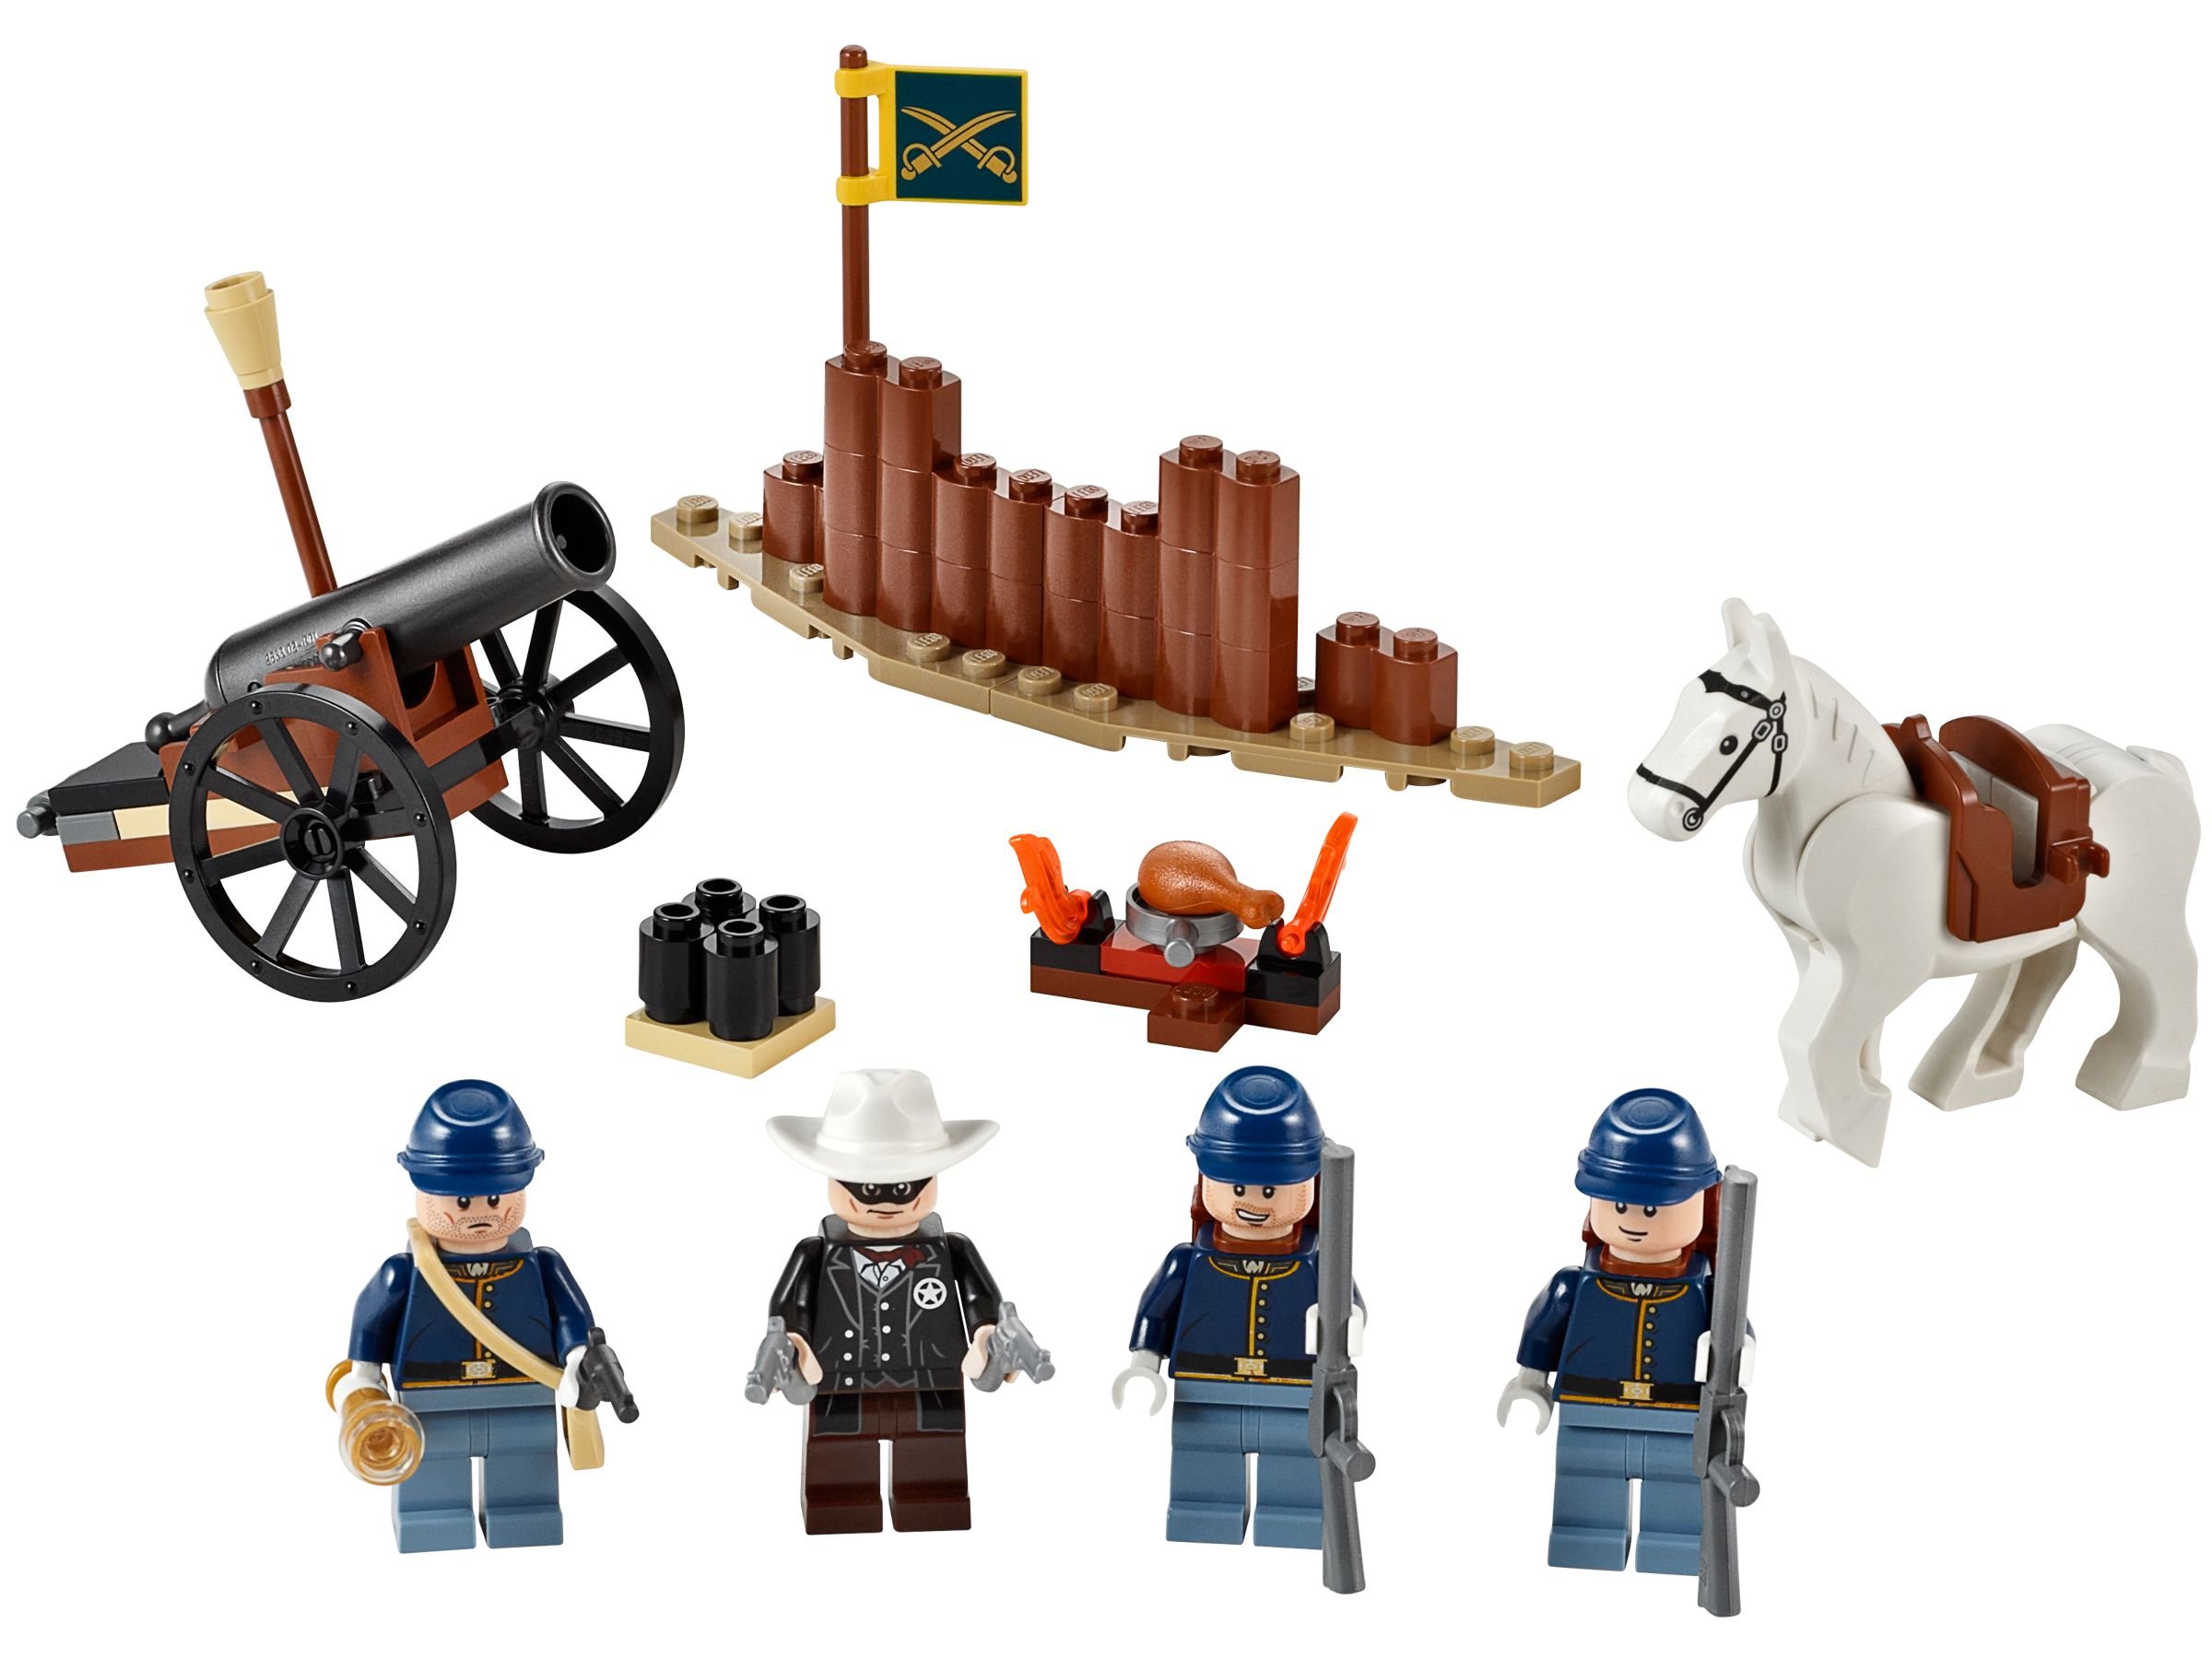 LEGO Lone Ranger 79106 Kavallerie Set LEGO_79106.jpg